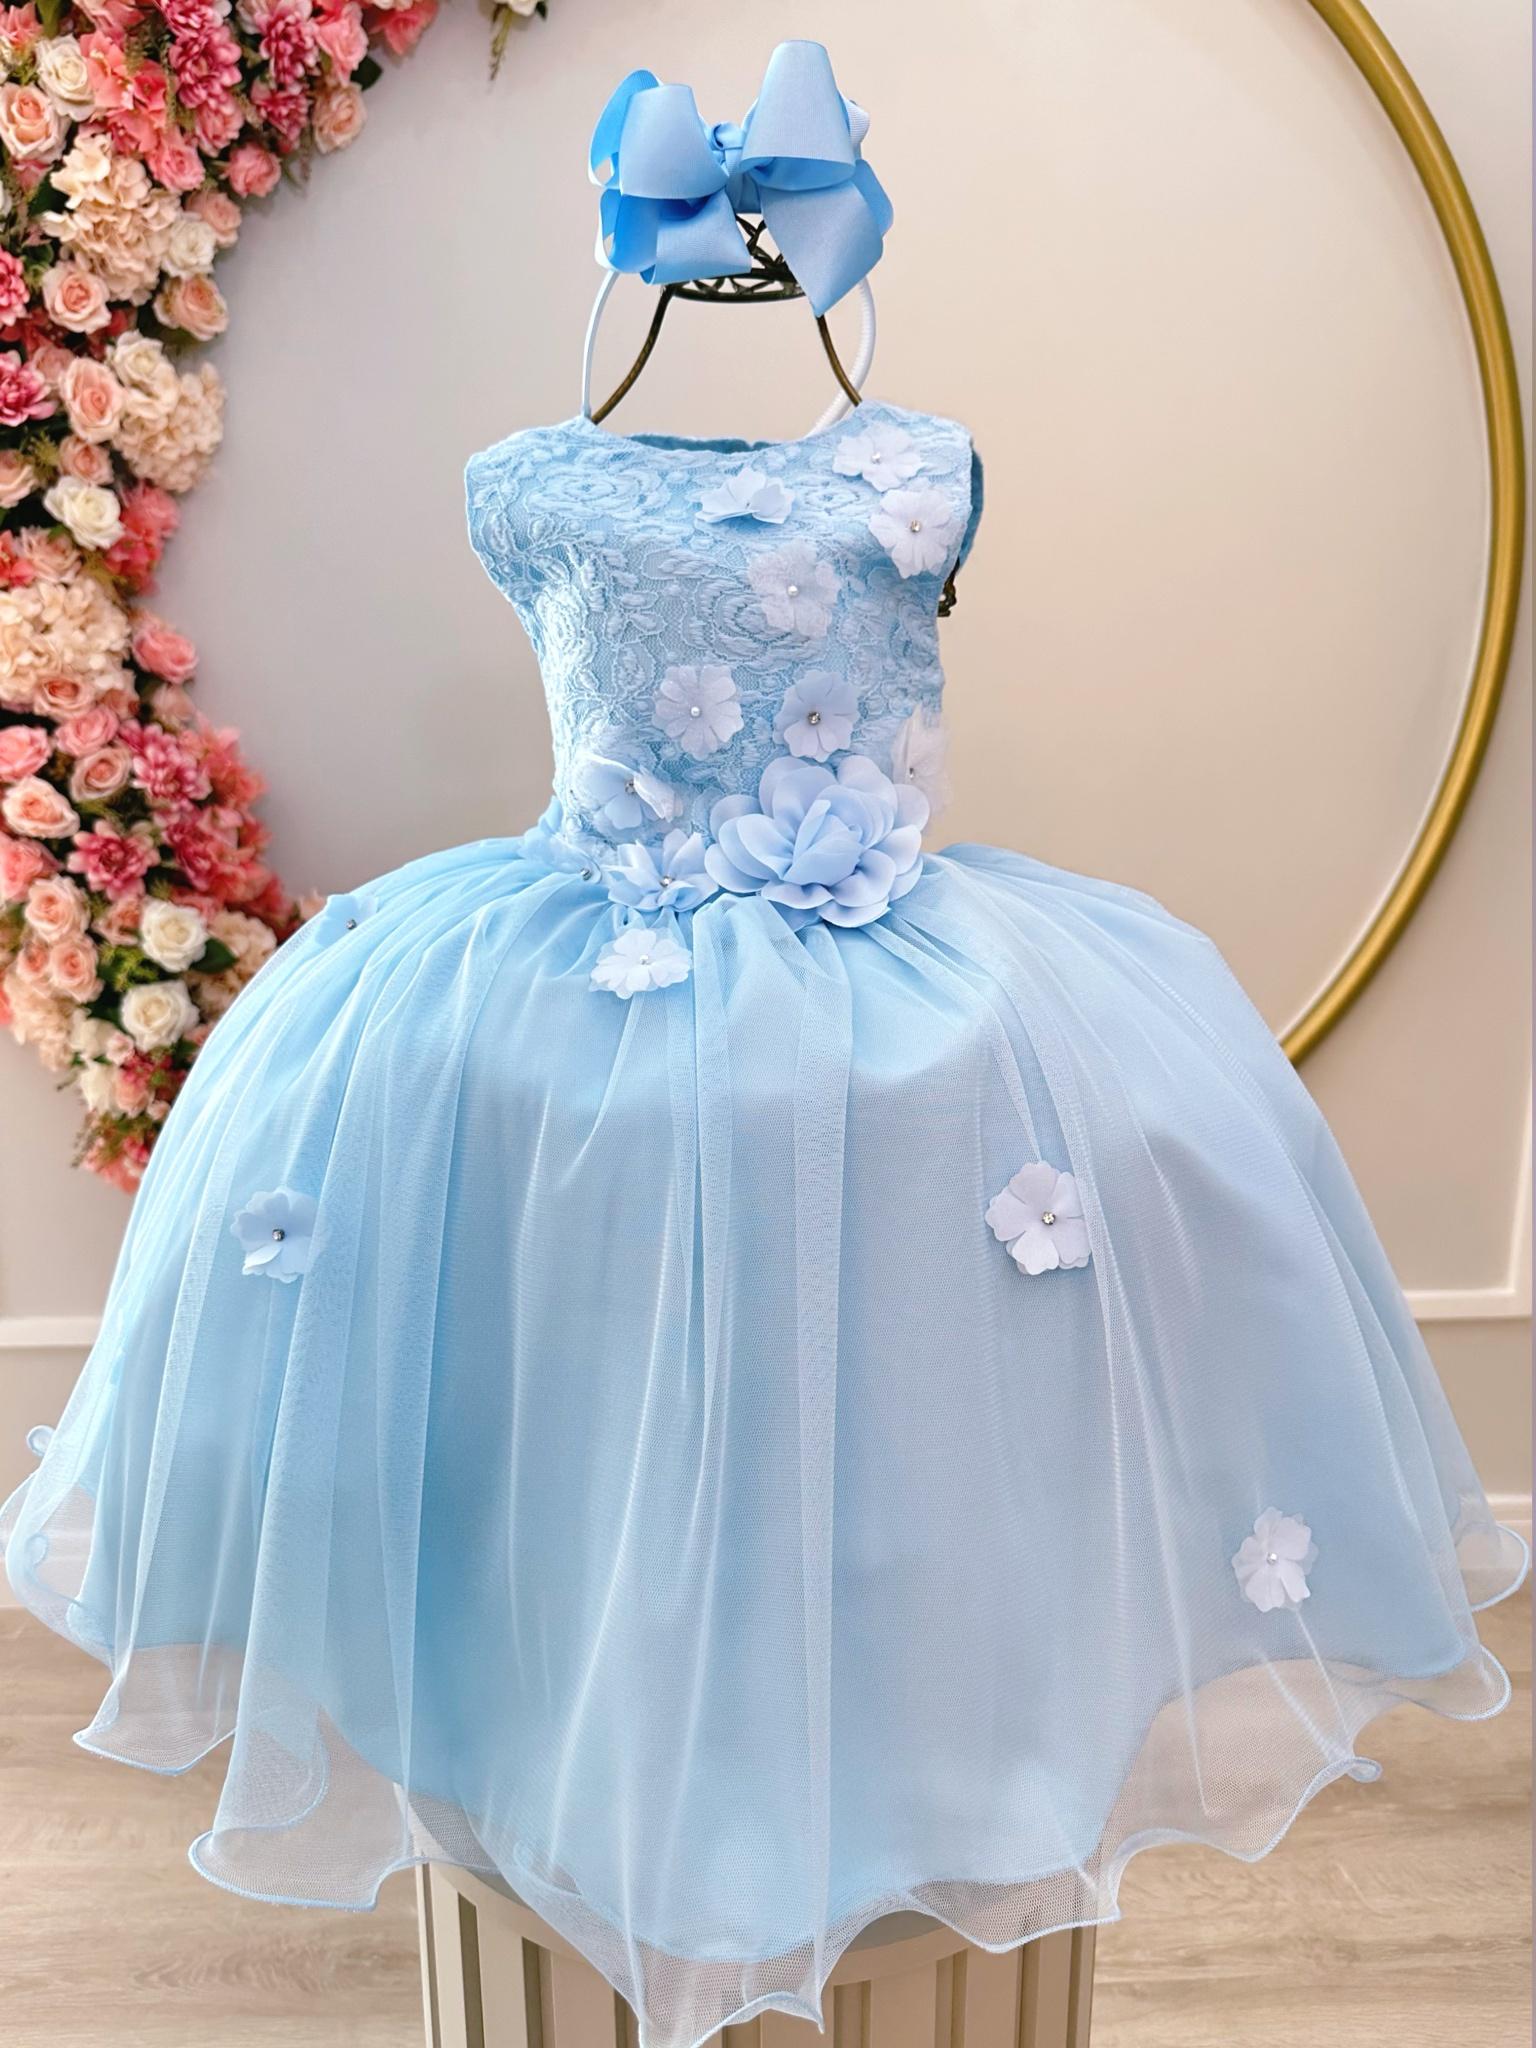 Vestido Infantil Azul C/ Renda e Aplique de Flores Damas